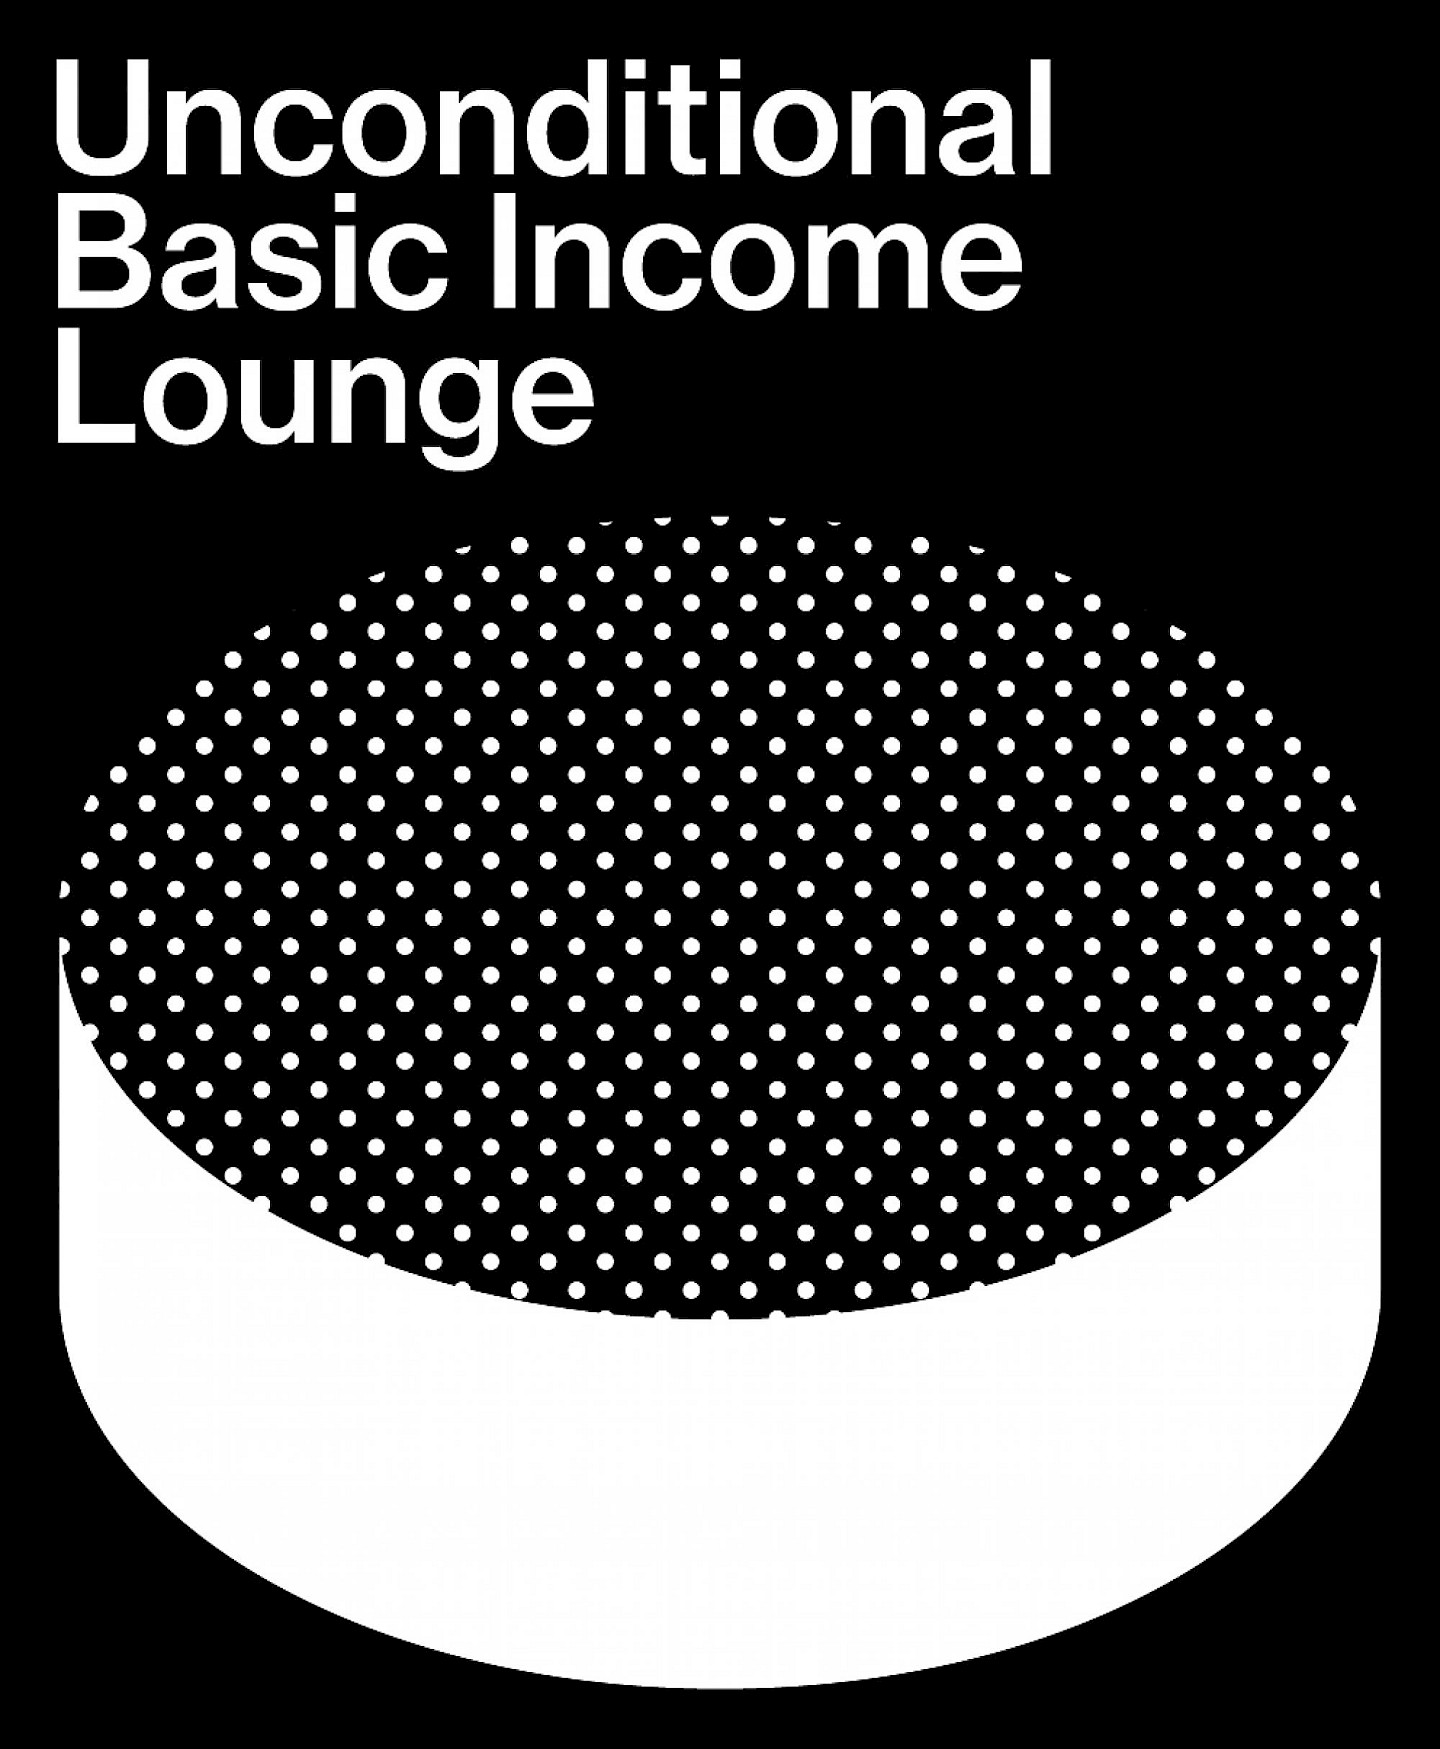 Logo für Unconditional Basic Income Lounge, 2017; Design: Studio Martin Stoecklin, Zürich